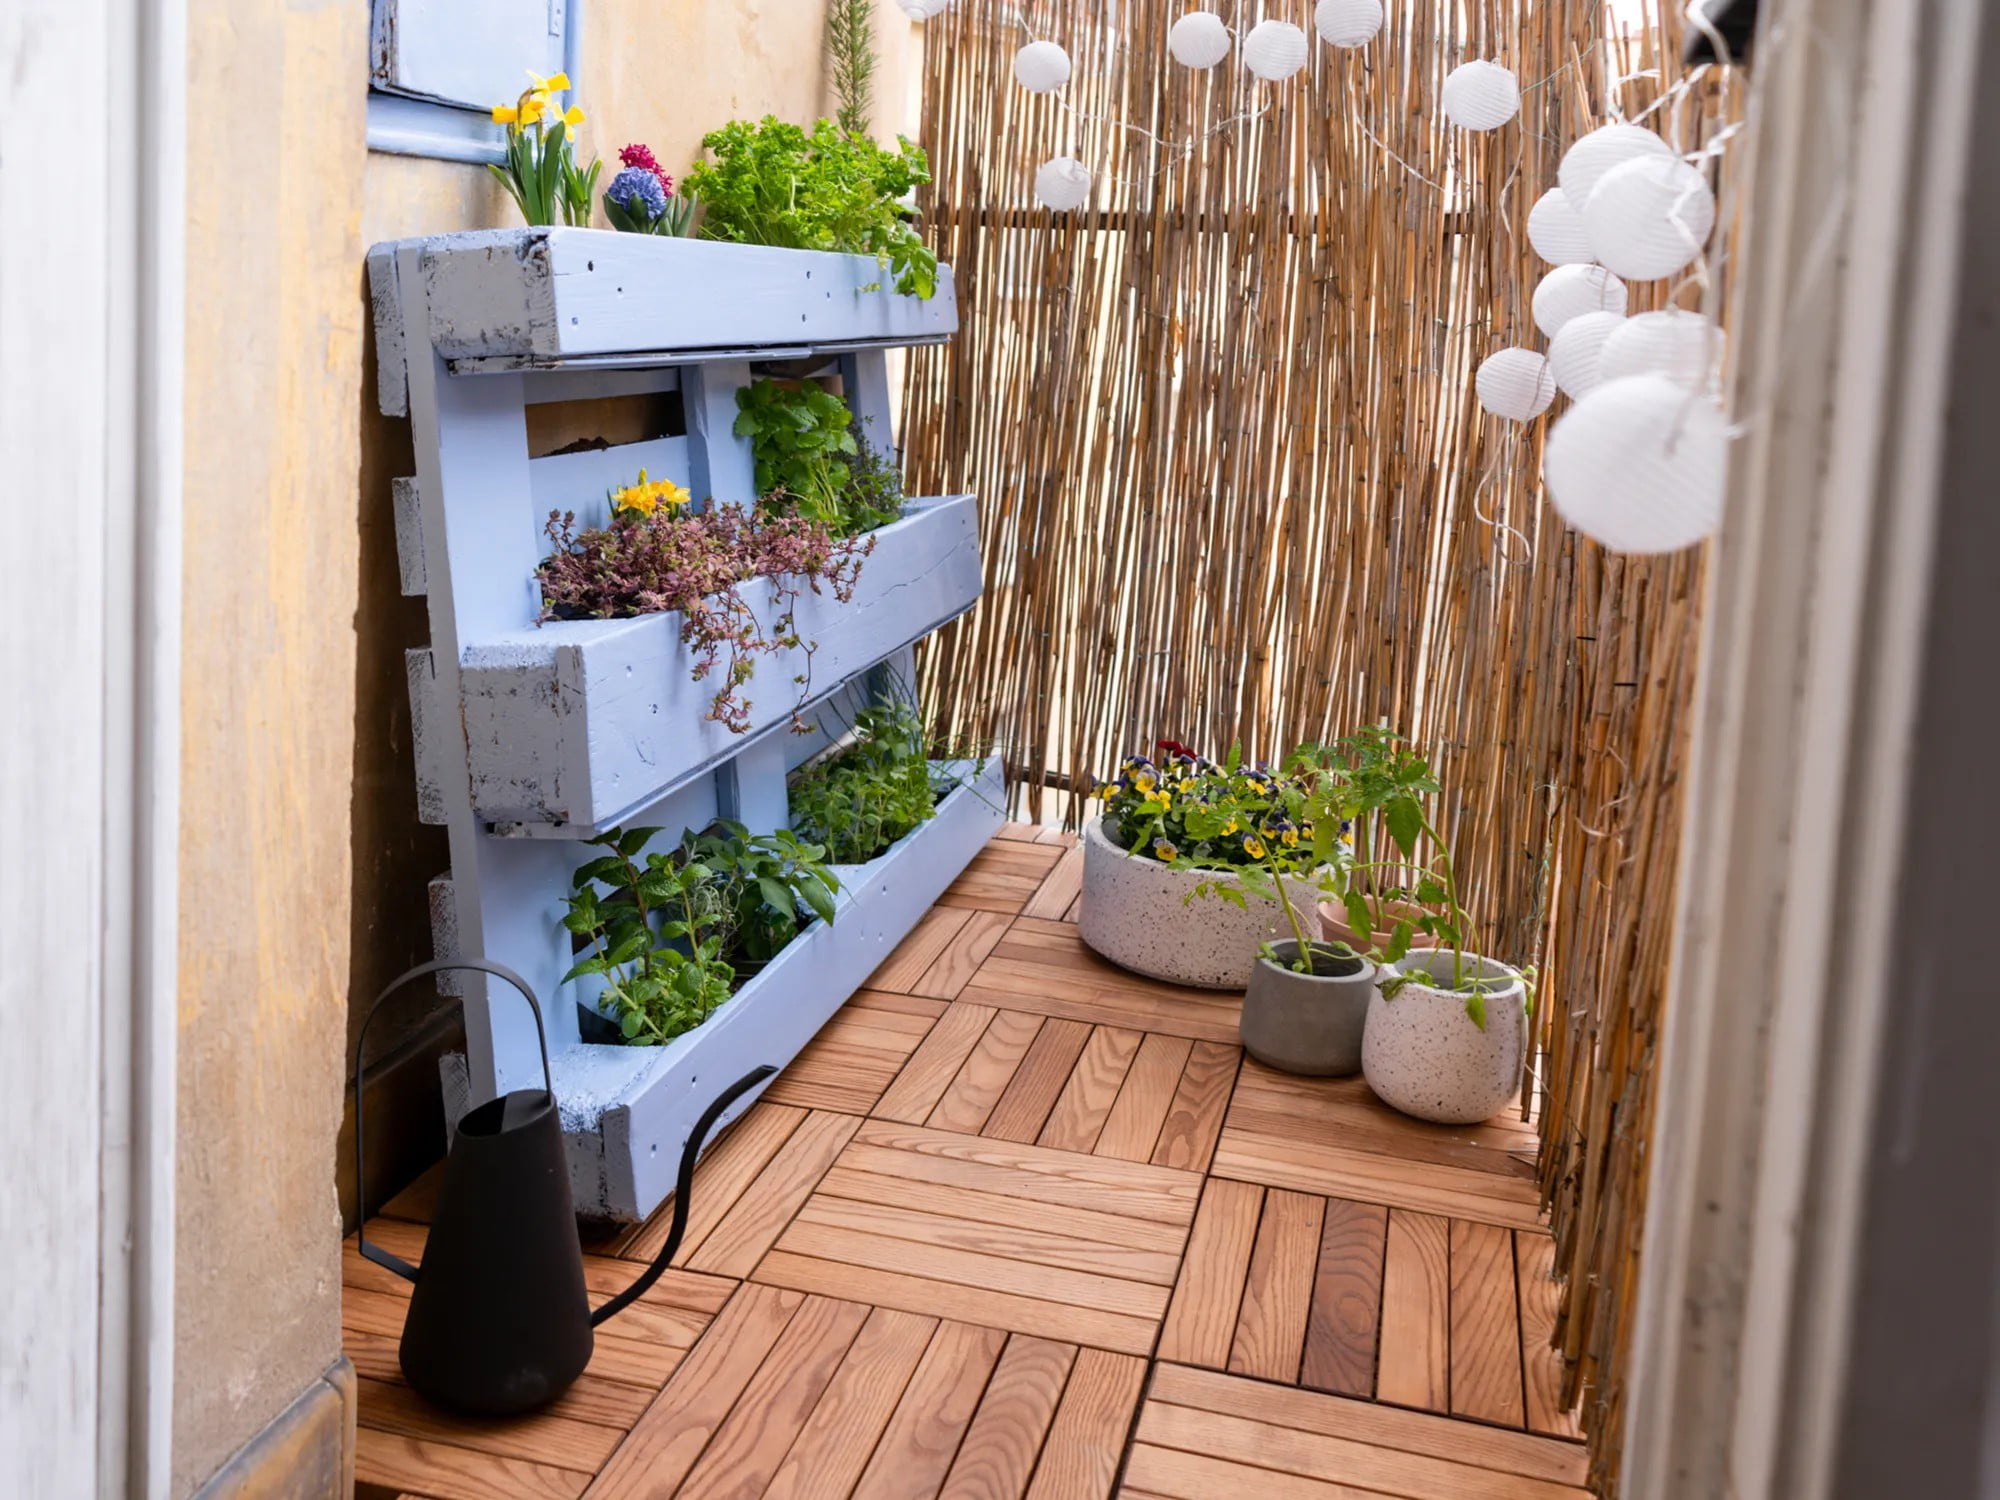 Jei balkone auginate prieskonines žoleles, galite pasigaminti praktišką padėklų stovą ir sutaupyti brangios vietos.